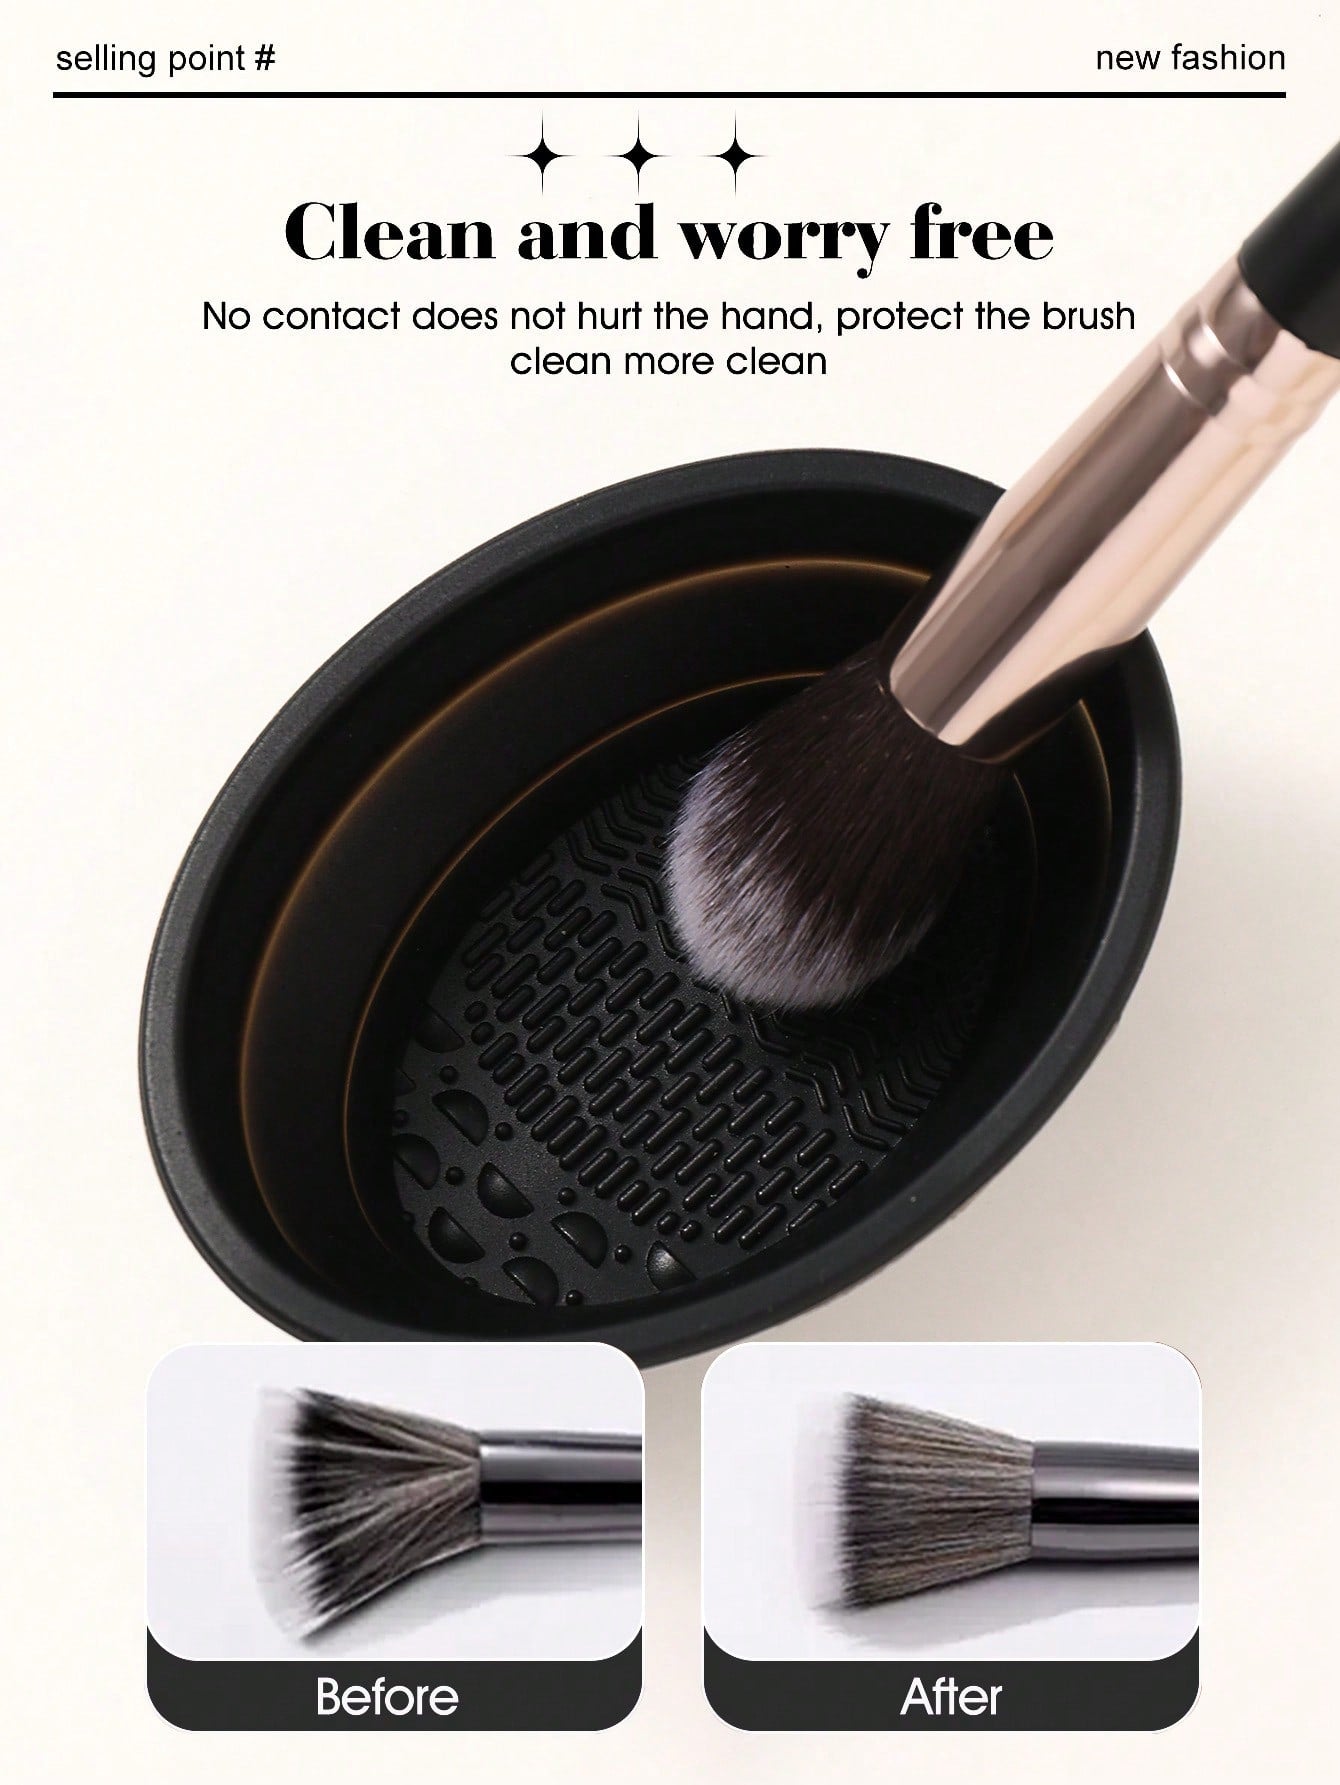 Makeup tool set 18pcs makeup brush sets+1PCS Cleaning brush+6PCS Makeup Puff+3PCS Makeup Sponge+ 1PCS eyelash curler - Negative Apparel